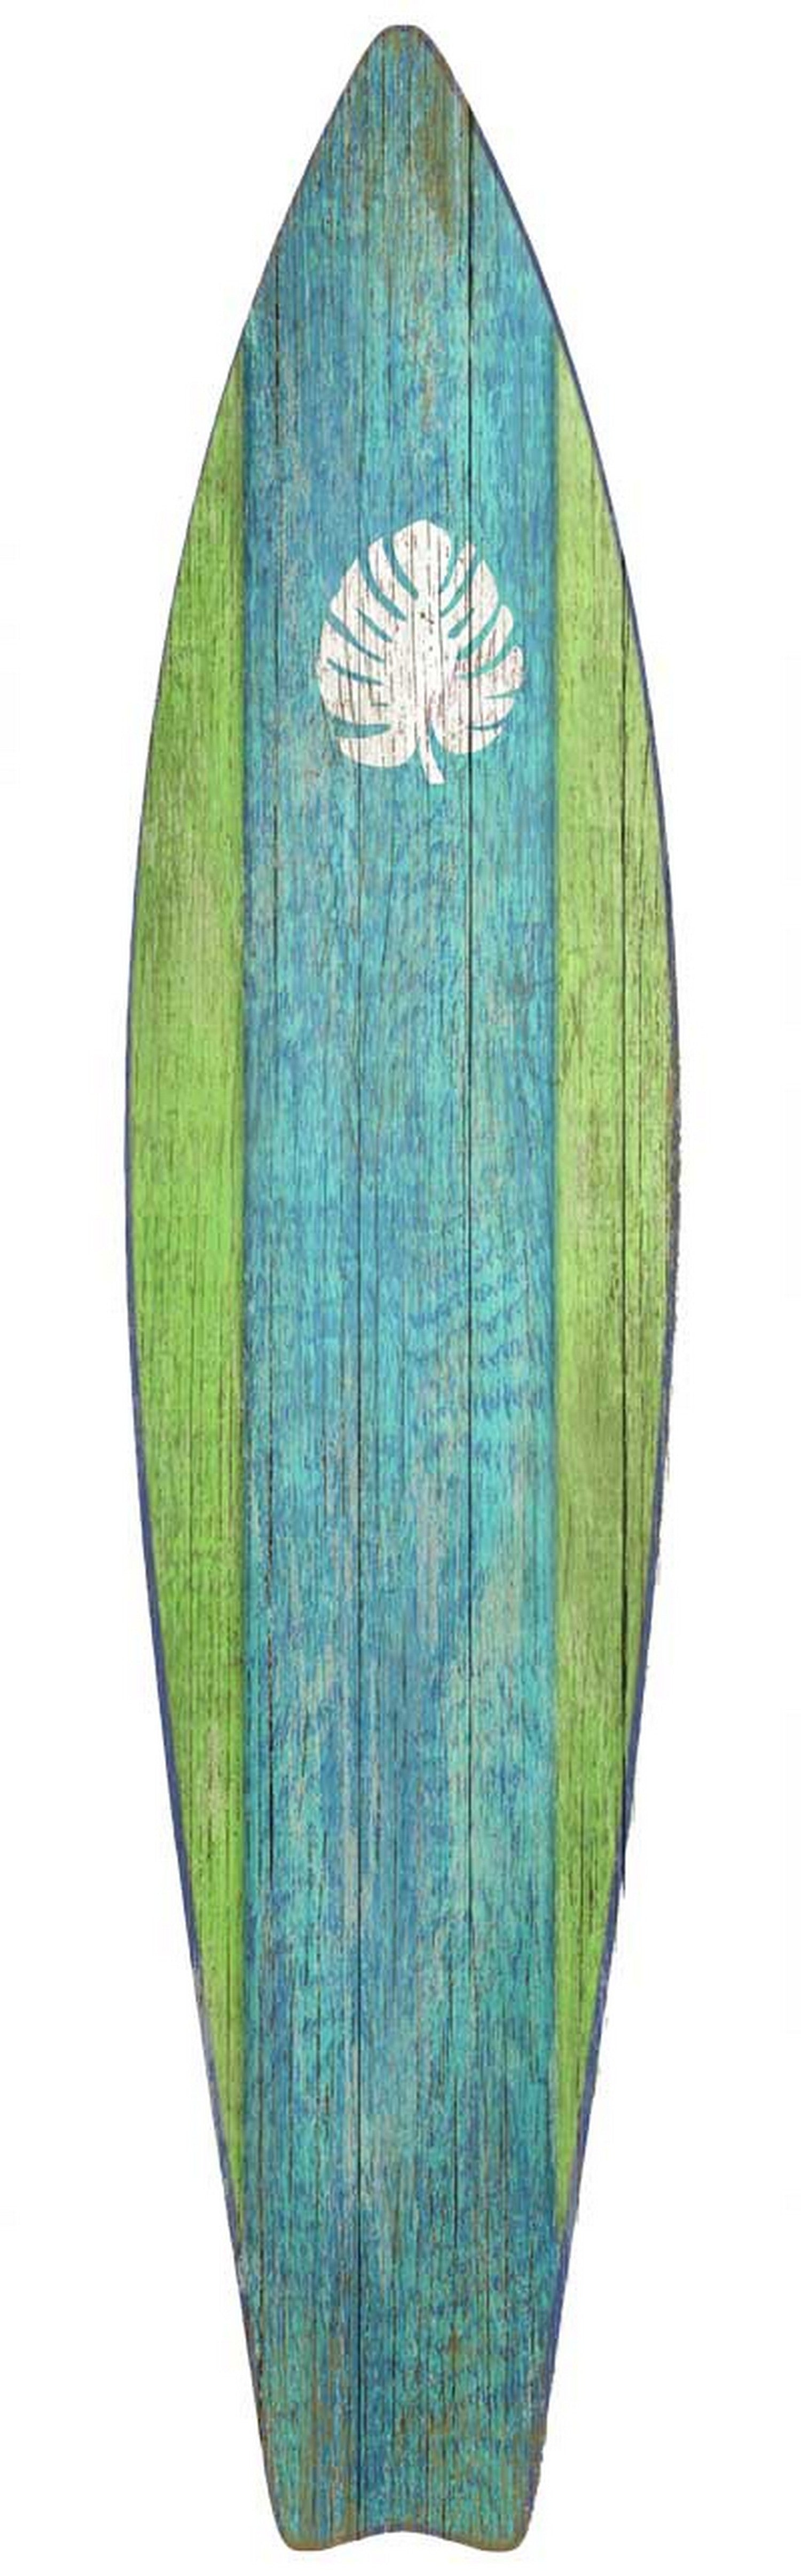 Rustic Aqua and Green Surfboard Wall Décor